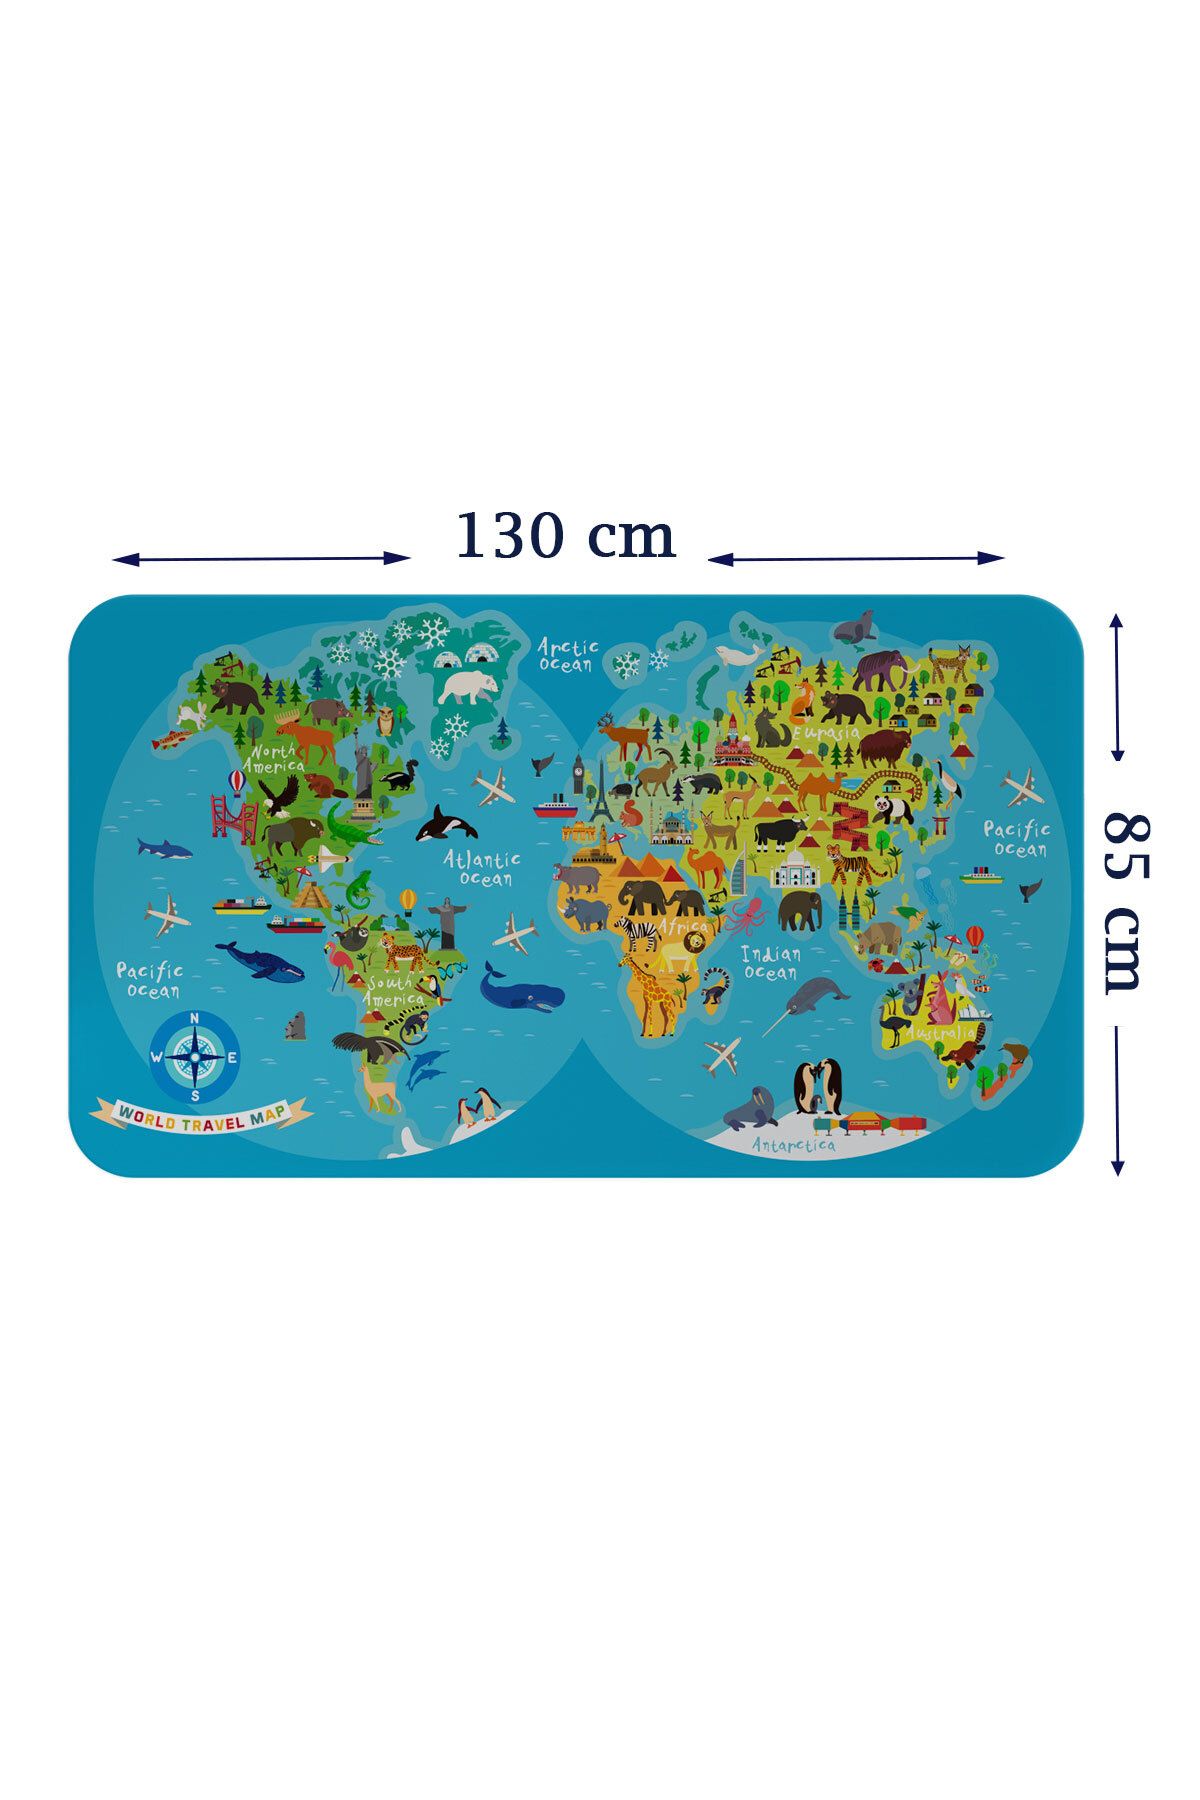 YE LOTUS Lts seri001 Eğitici Dünya Haritası Dünya Atlası Çocuk ve Bebek Odası Duvar Sticker-85x130-3805